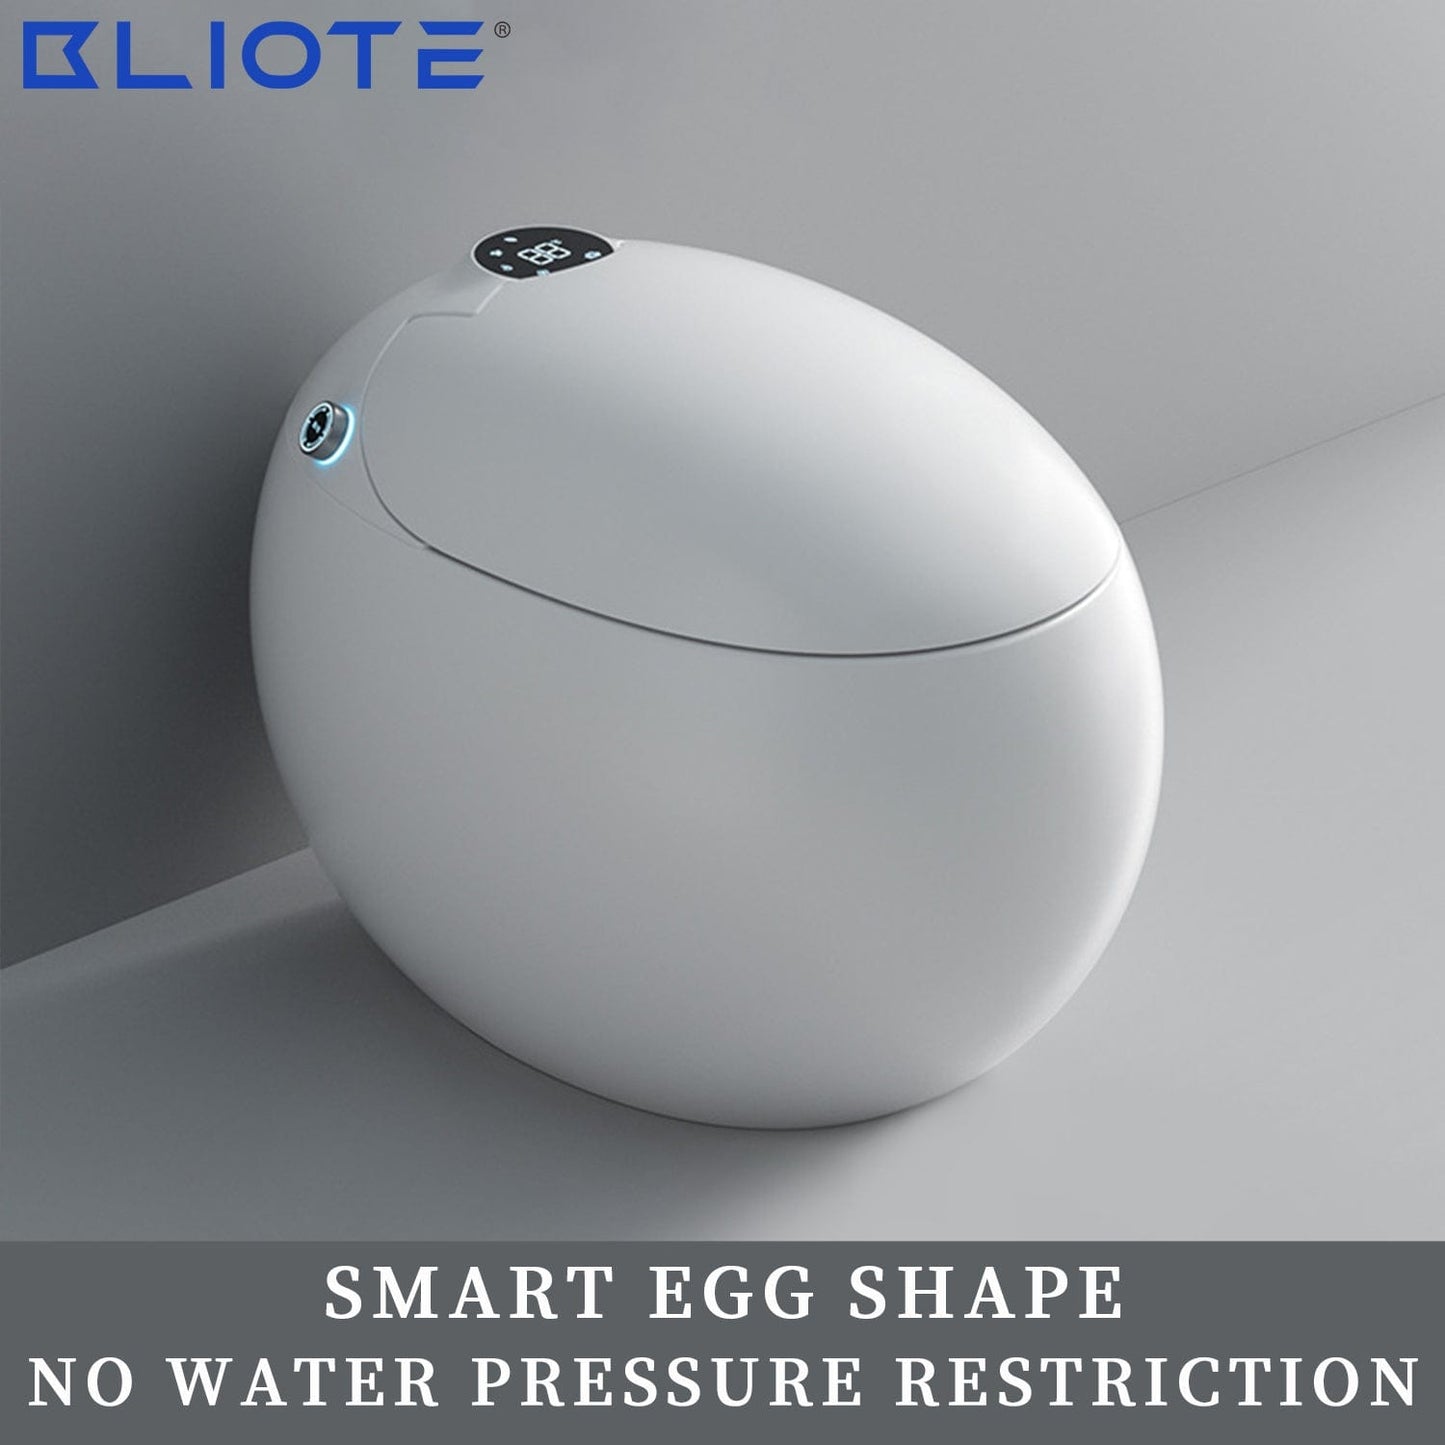 Toilette intelligente Bliote™ 70079